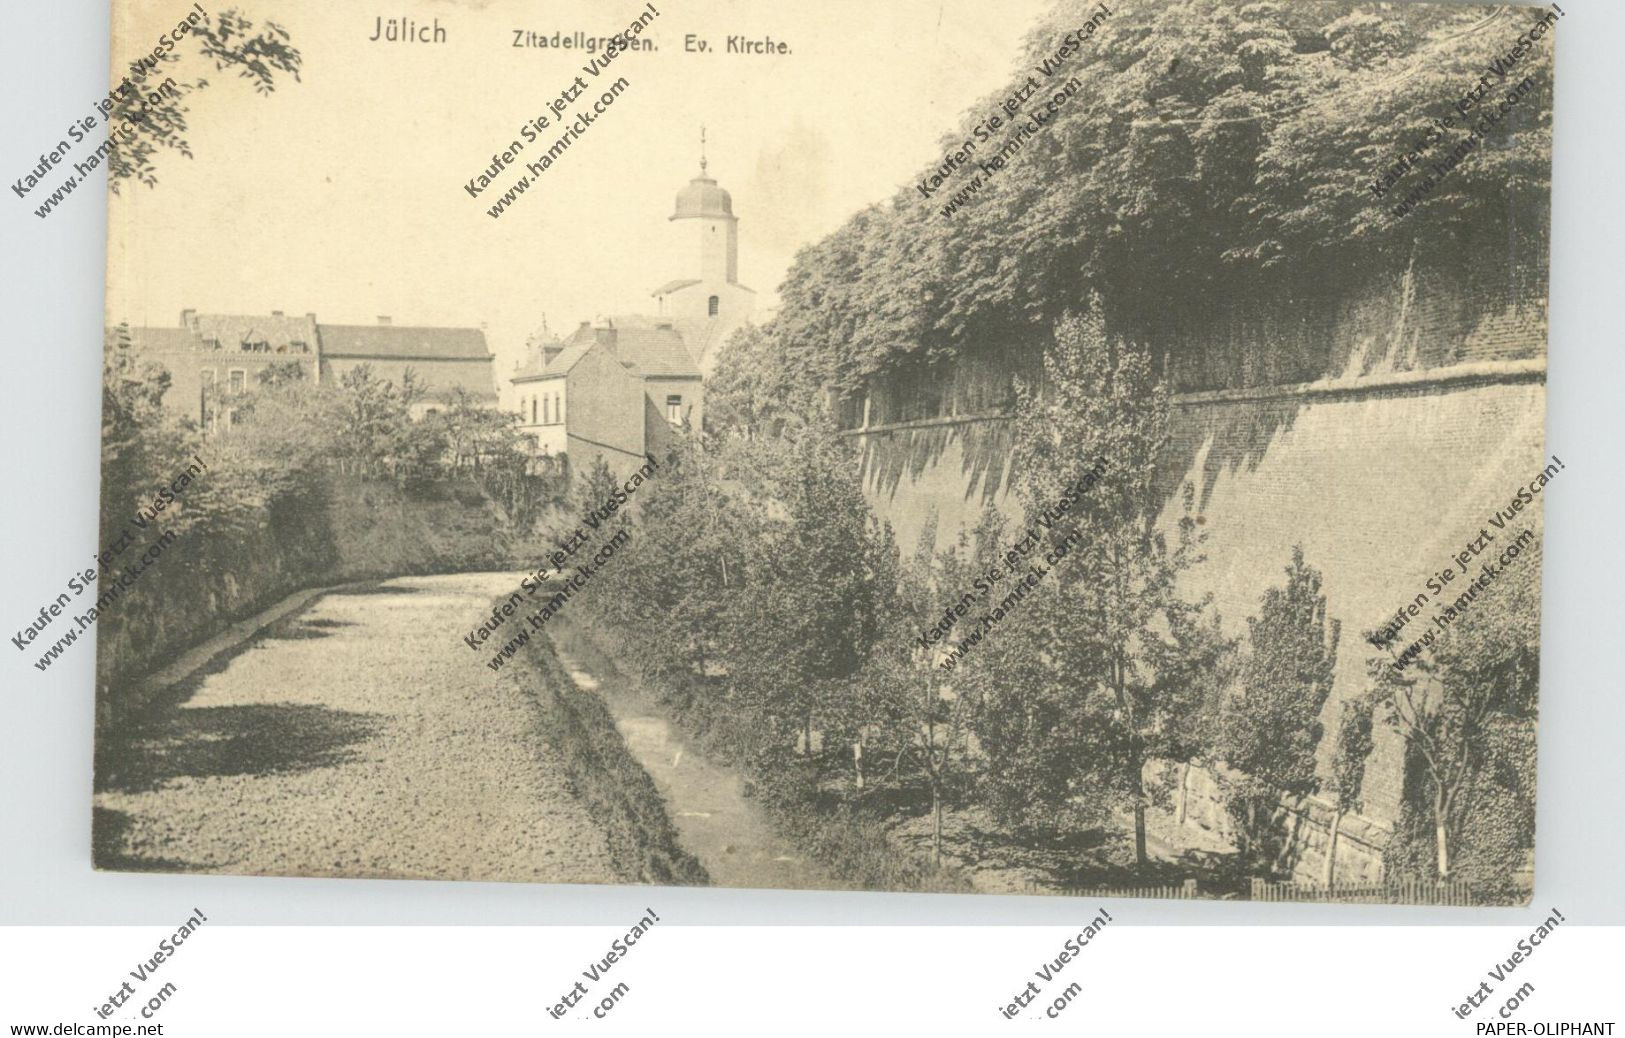 5170 JÜLICH, Zitadellengraben, Ev. Kirche, 1919 - Jülich